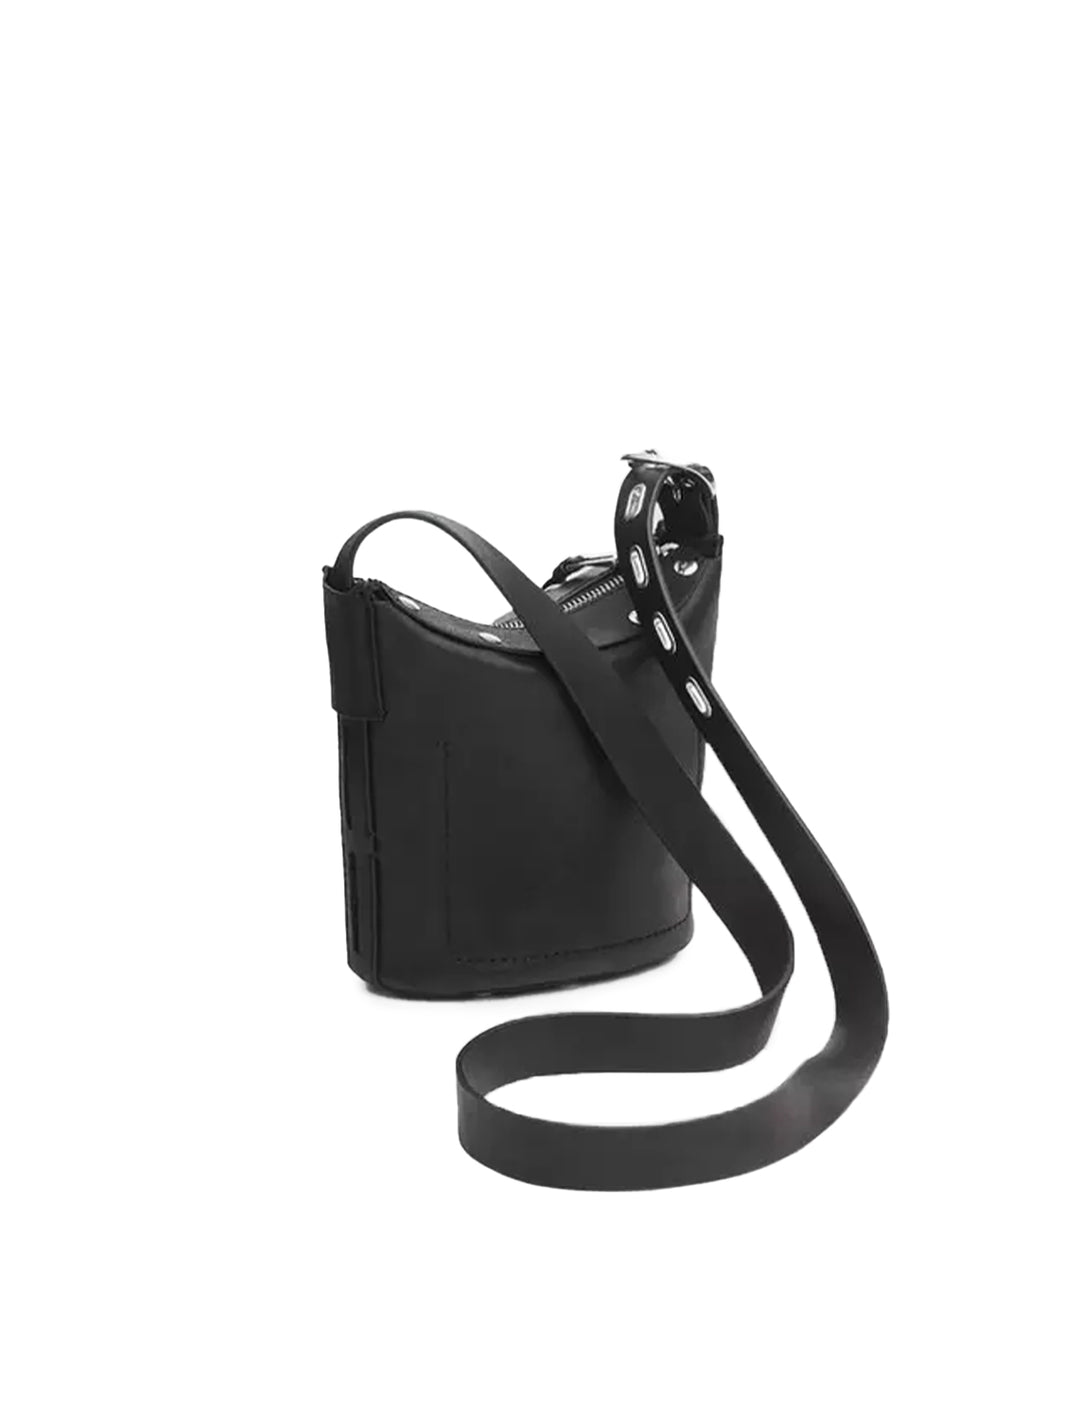 Belize Bucket Bag - Leather